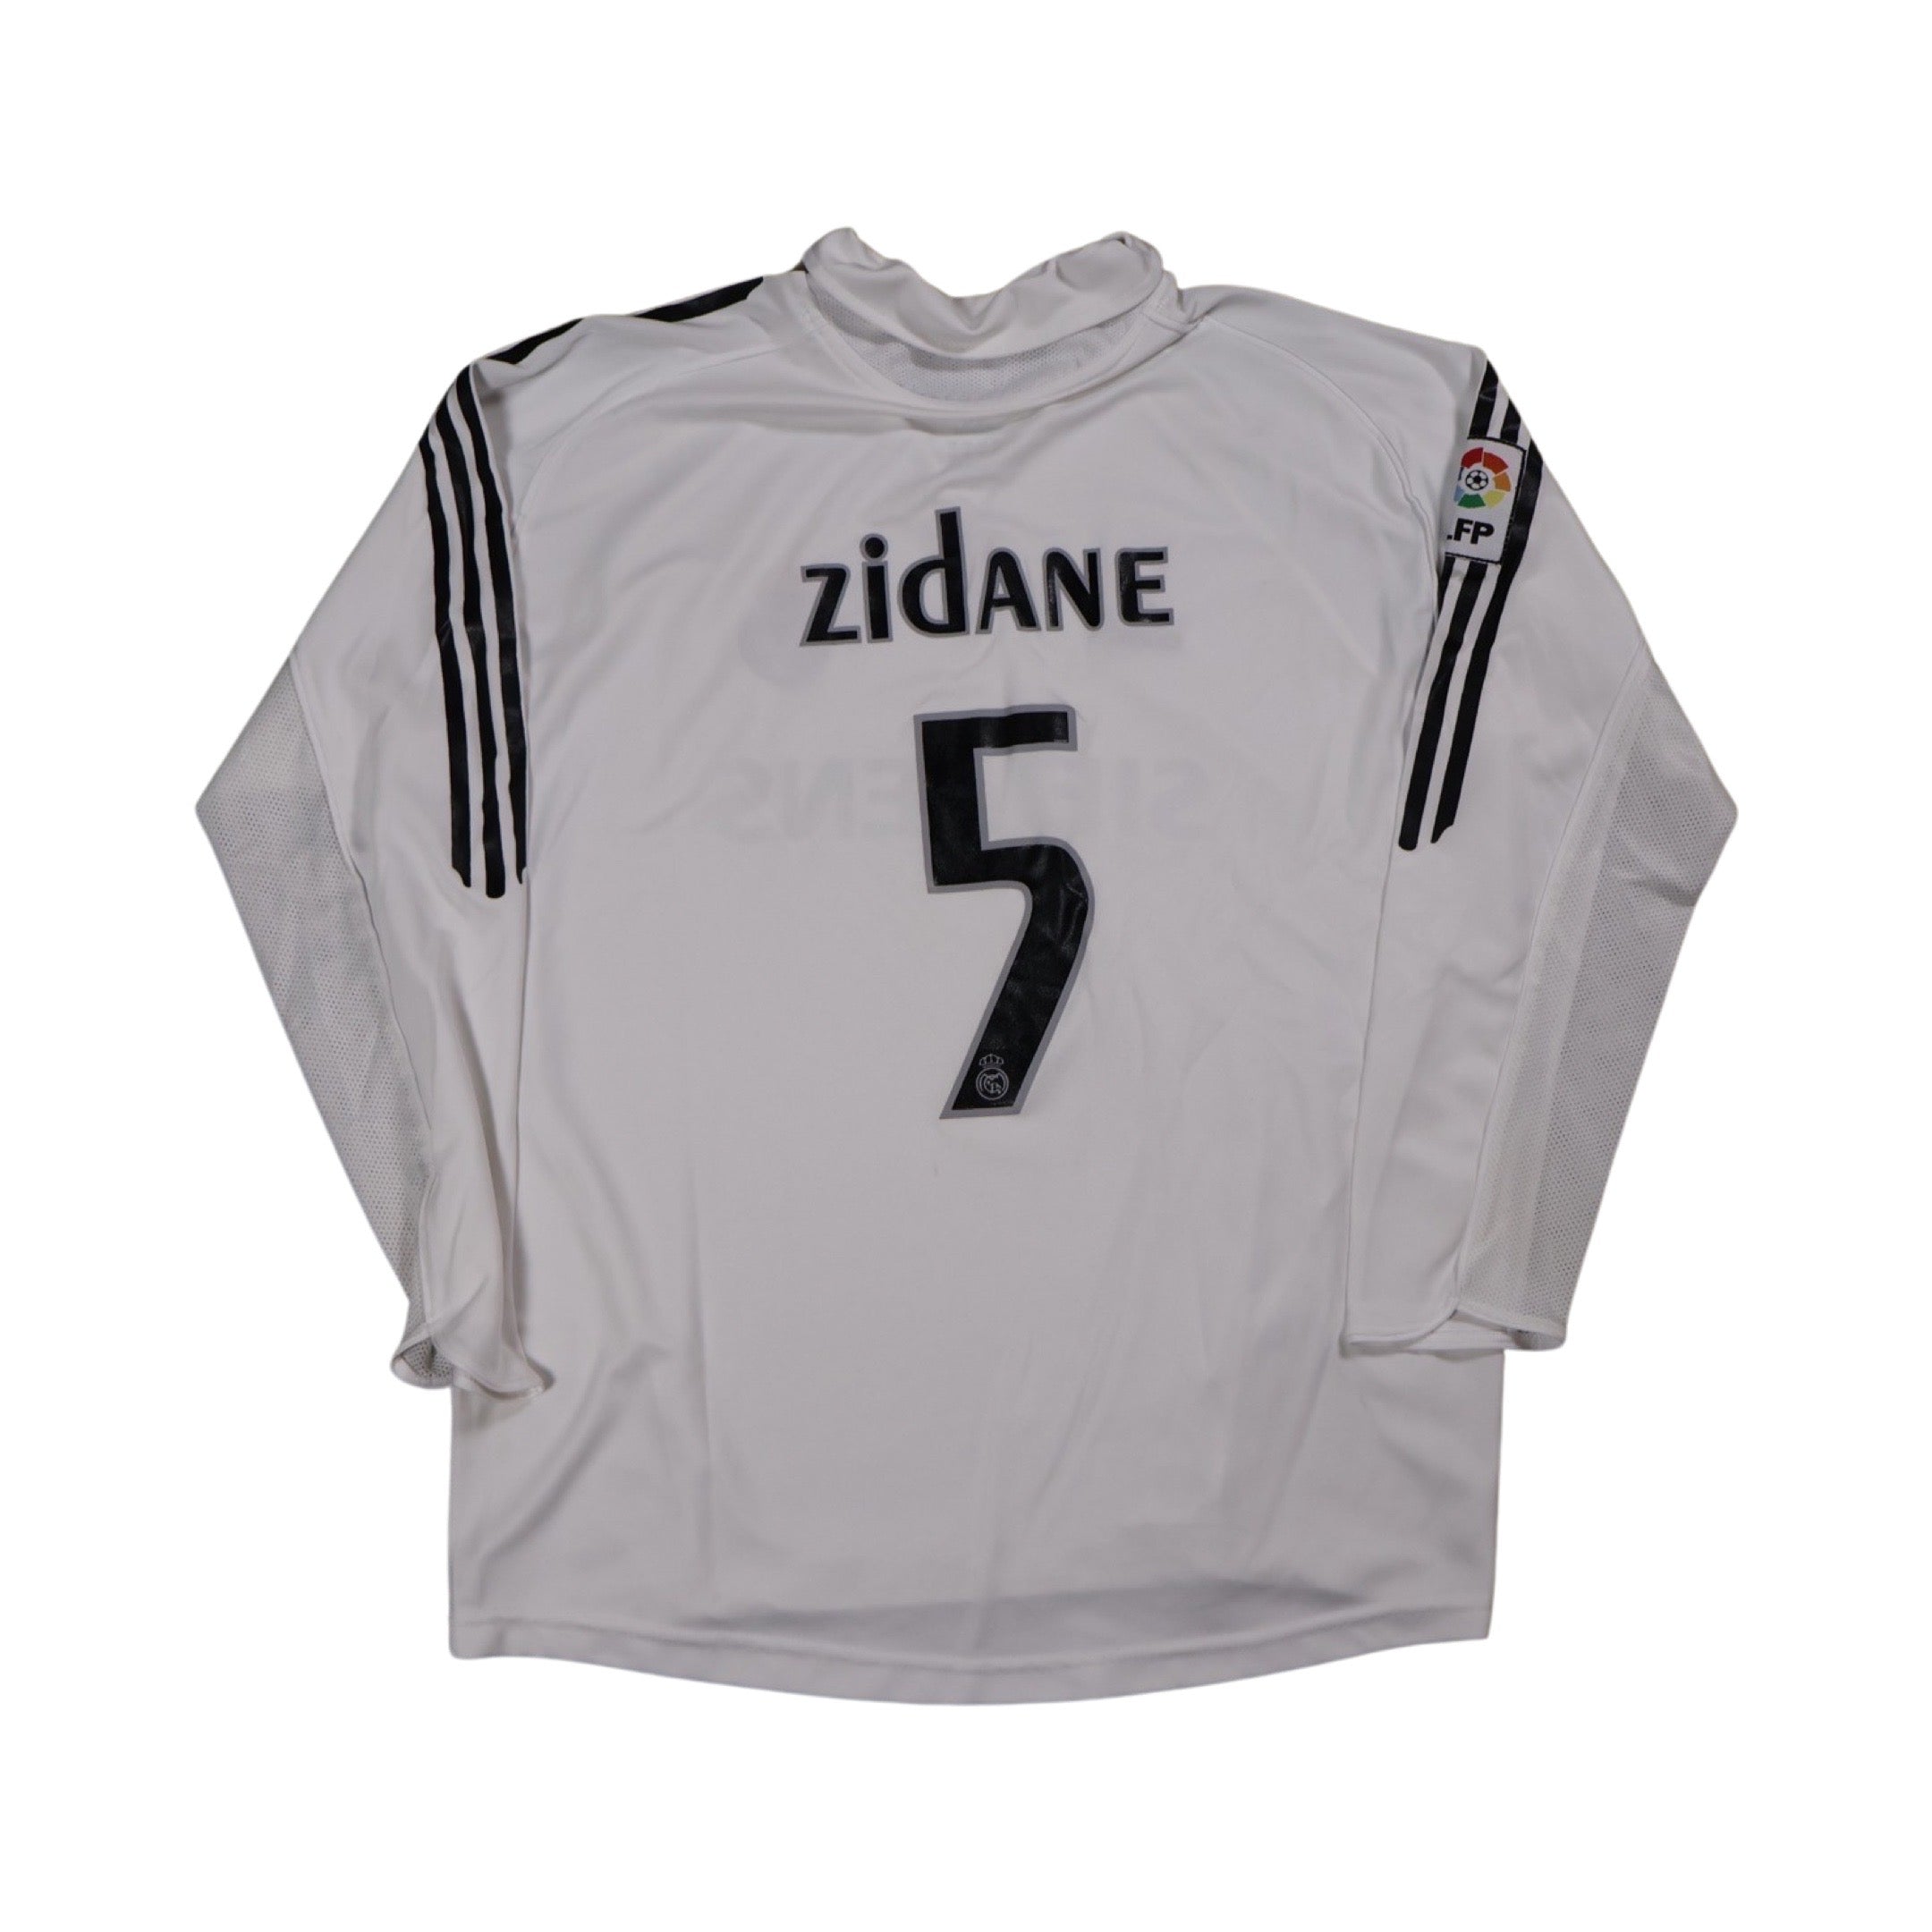 Zidane Real Madrid 2005 Longsleeve Soccer Jersey (XL)